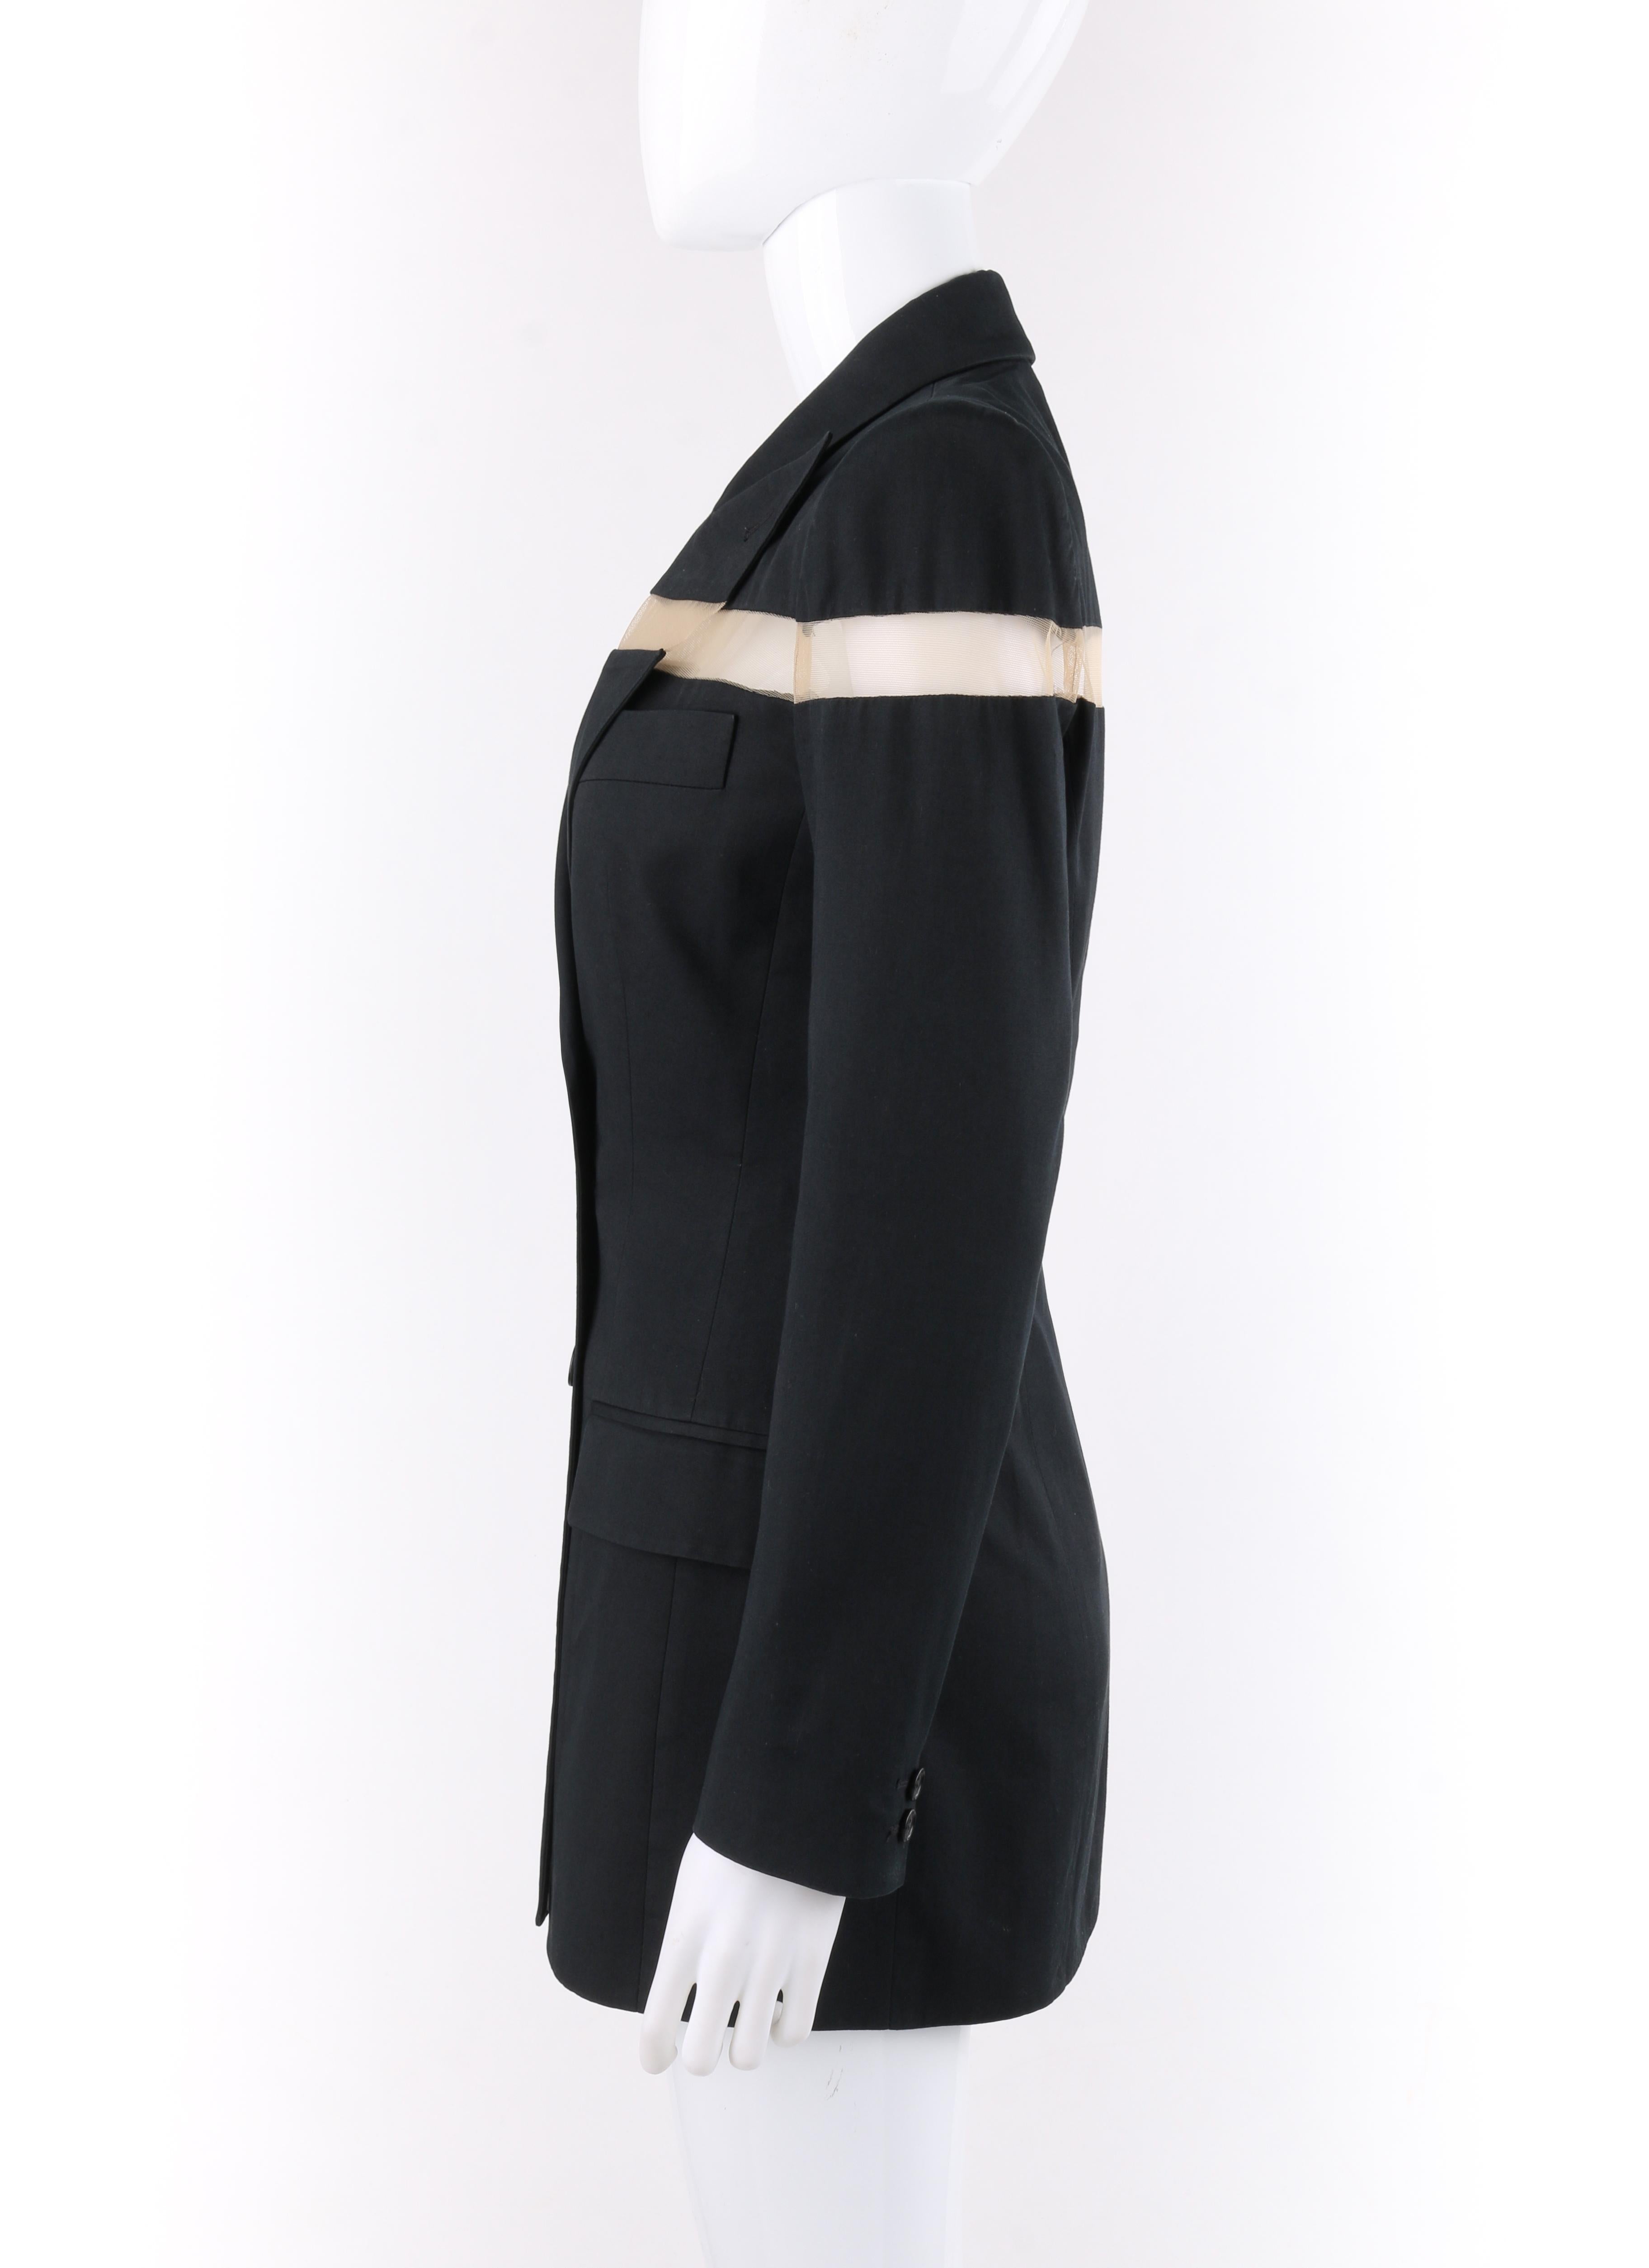 ALEXANDER McQUEEN S/S 1998 “Golden Shower” Black Mesh Stripe Blazer Mini Dress In Good Condition In Thiensville, WI